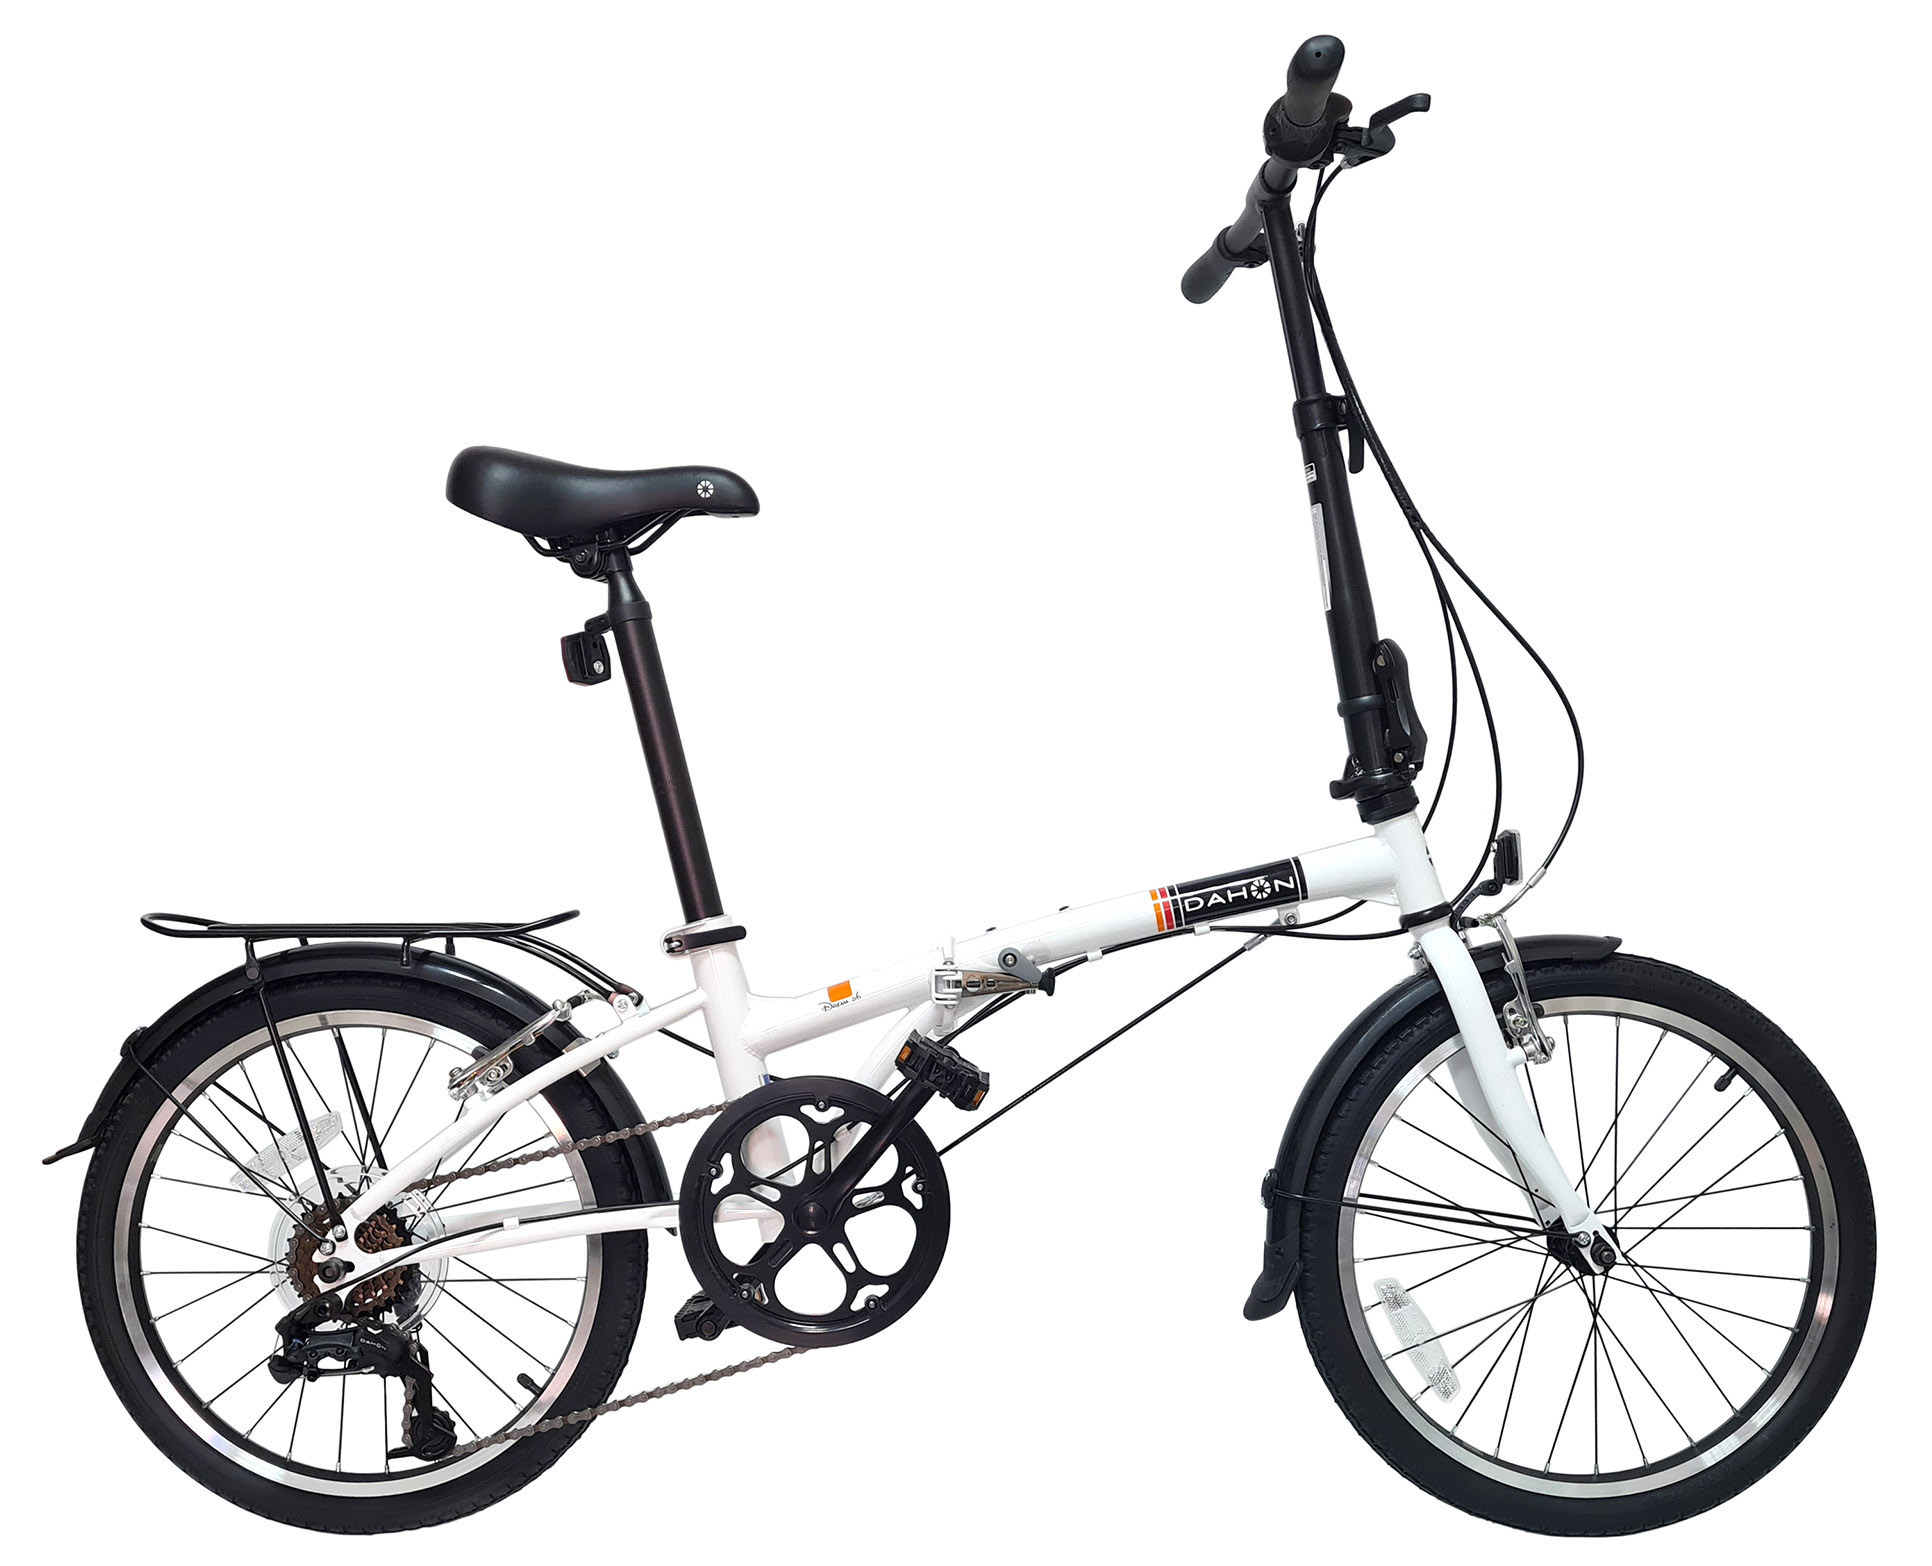  Отзывы о Складном велосипеде Dahon Dream D6 (2021) 2021